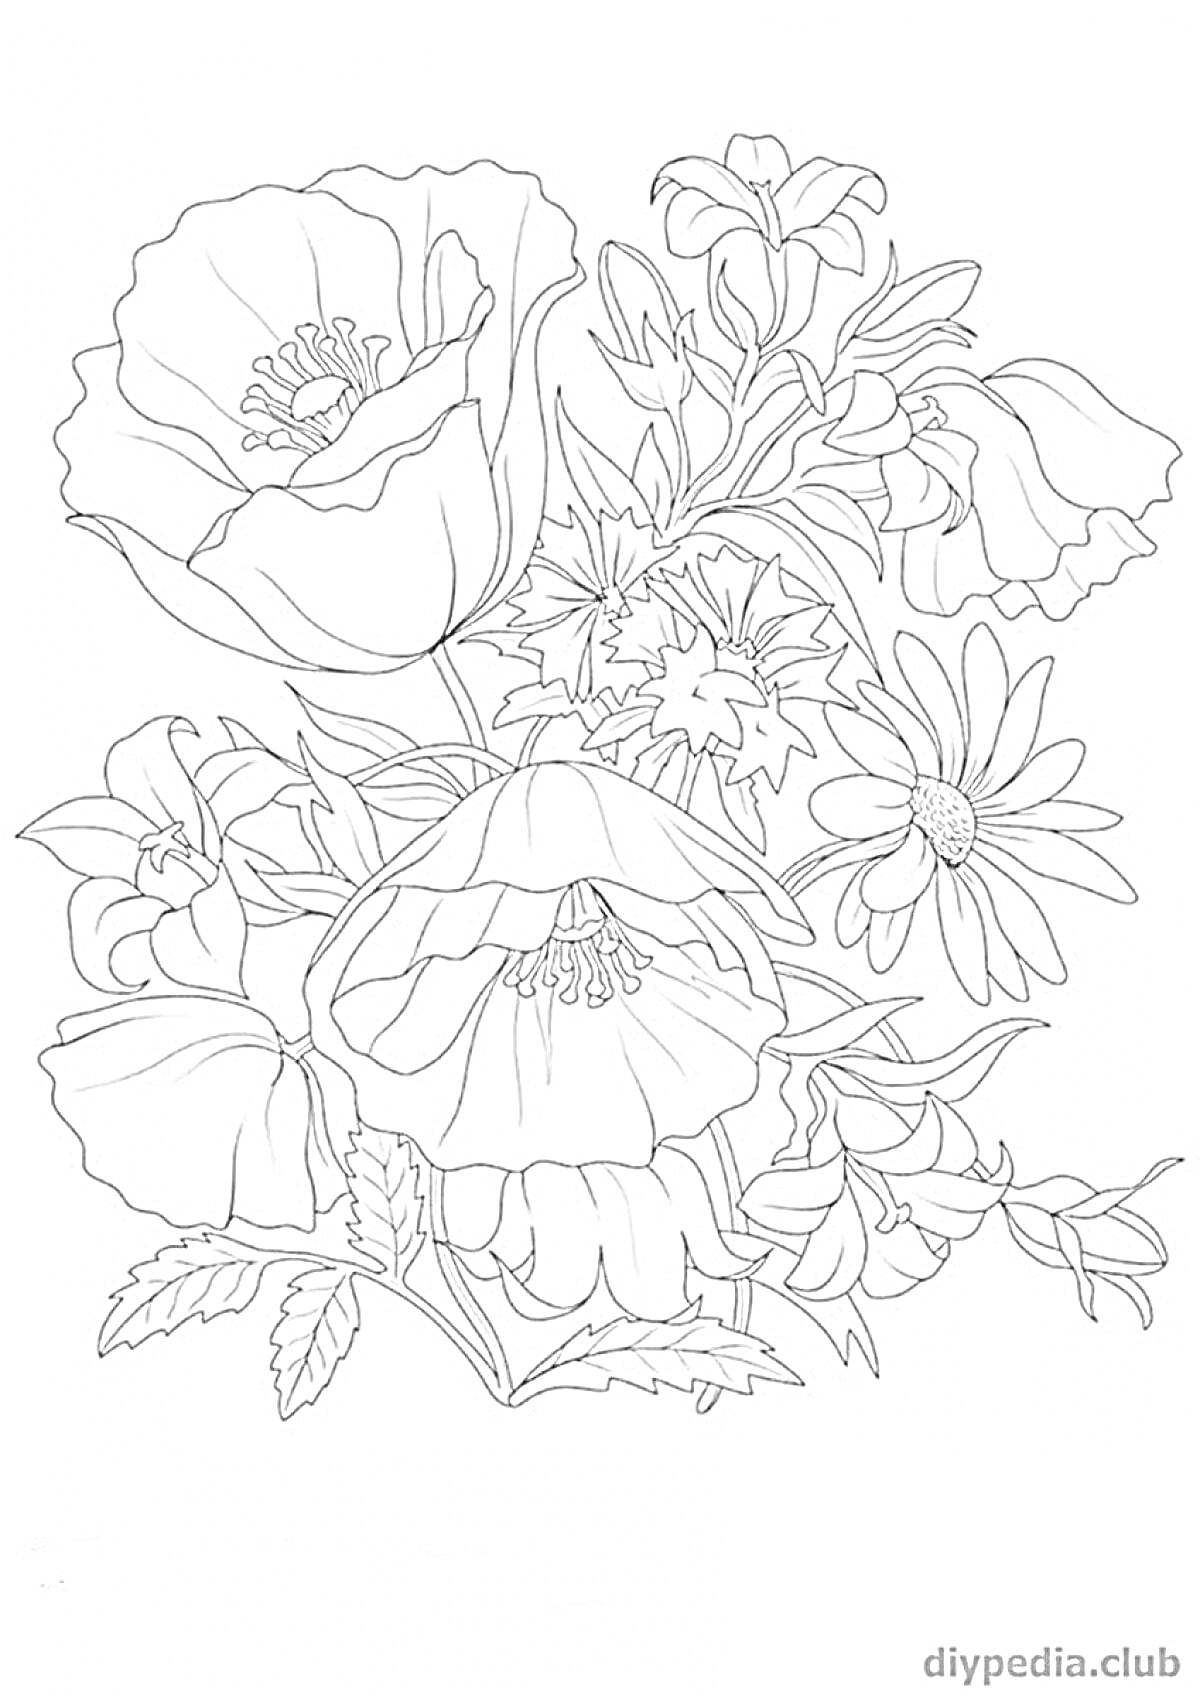 Раскраска Рисунок крупных красивых цветов: маки, ромашки и бутоны